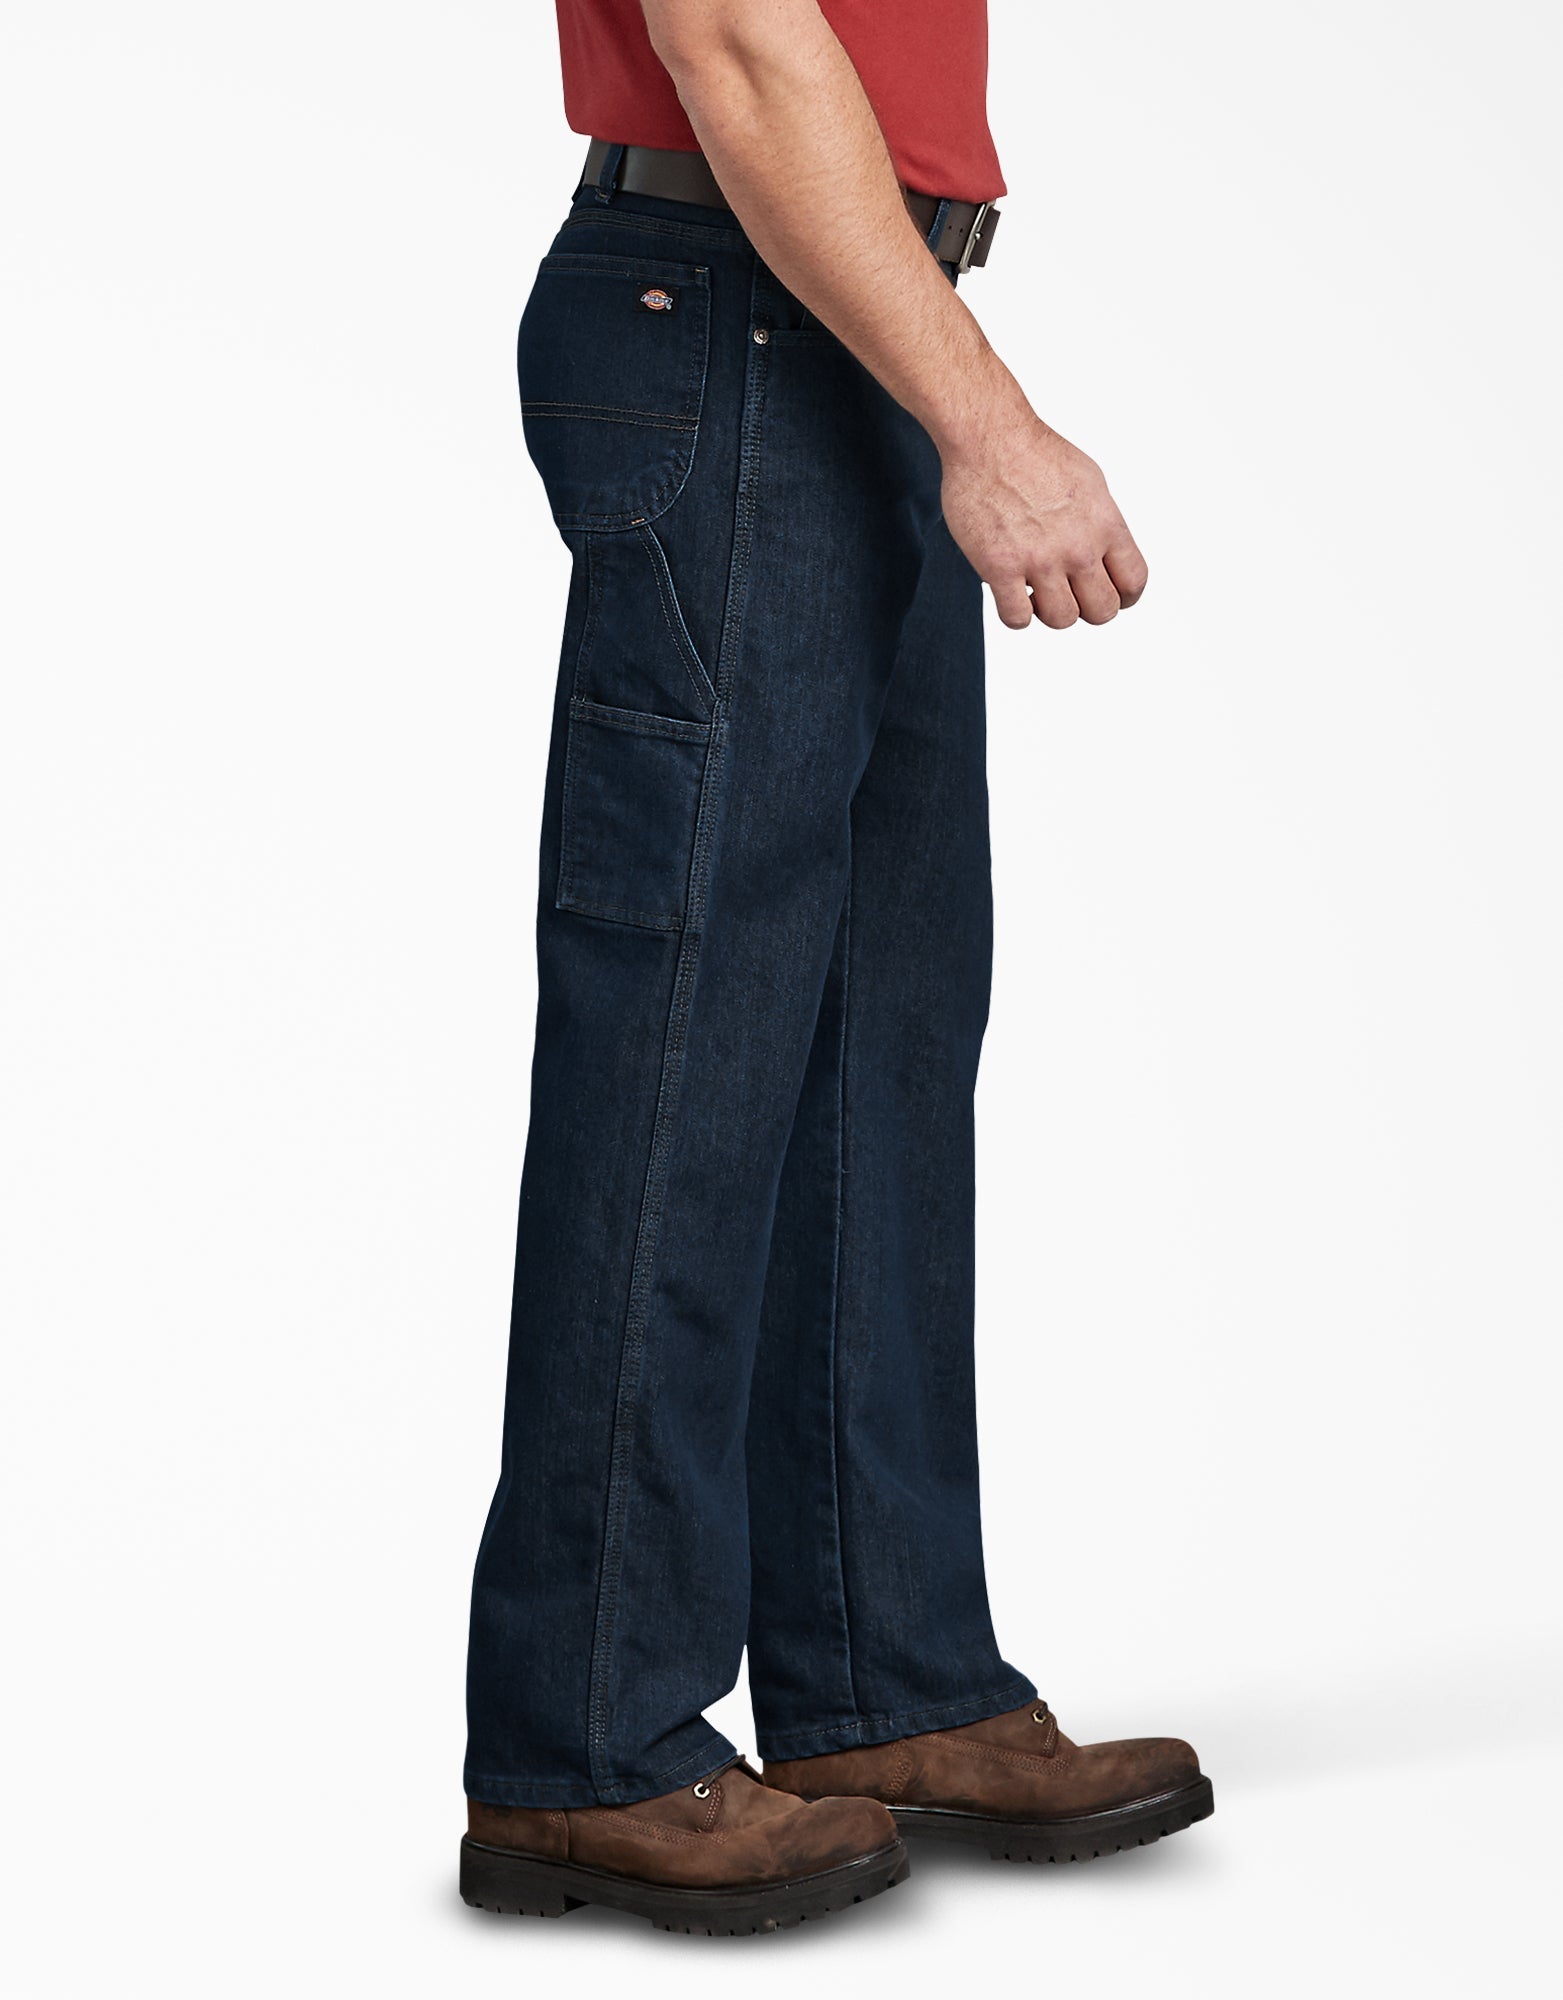 Buy Levi's Mens 501 Black Regular Fit Jeans online